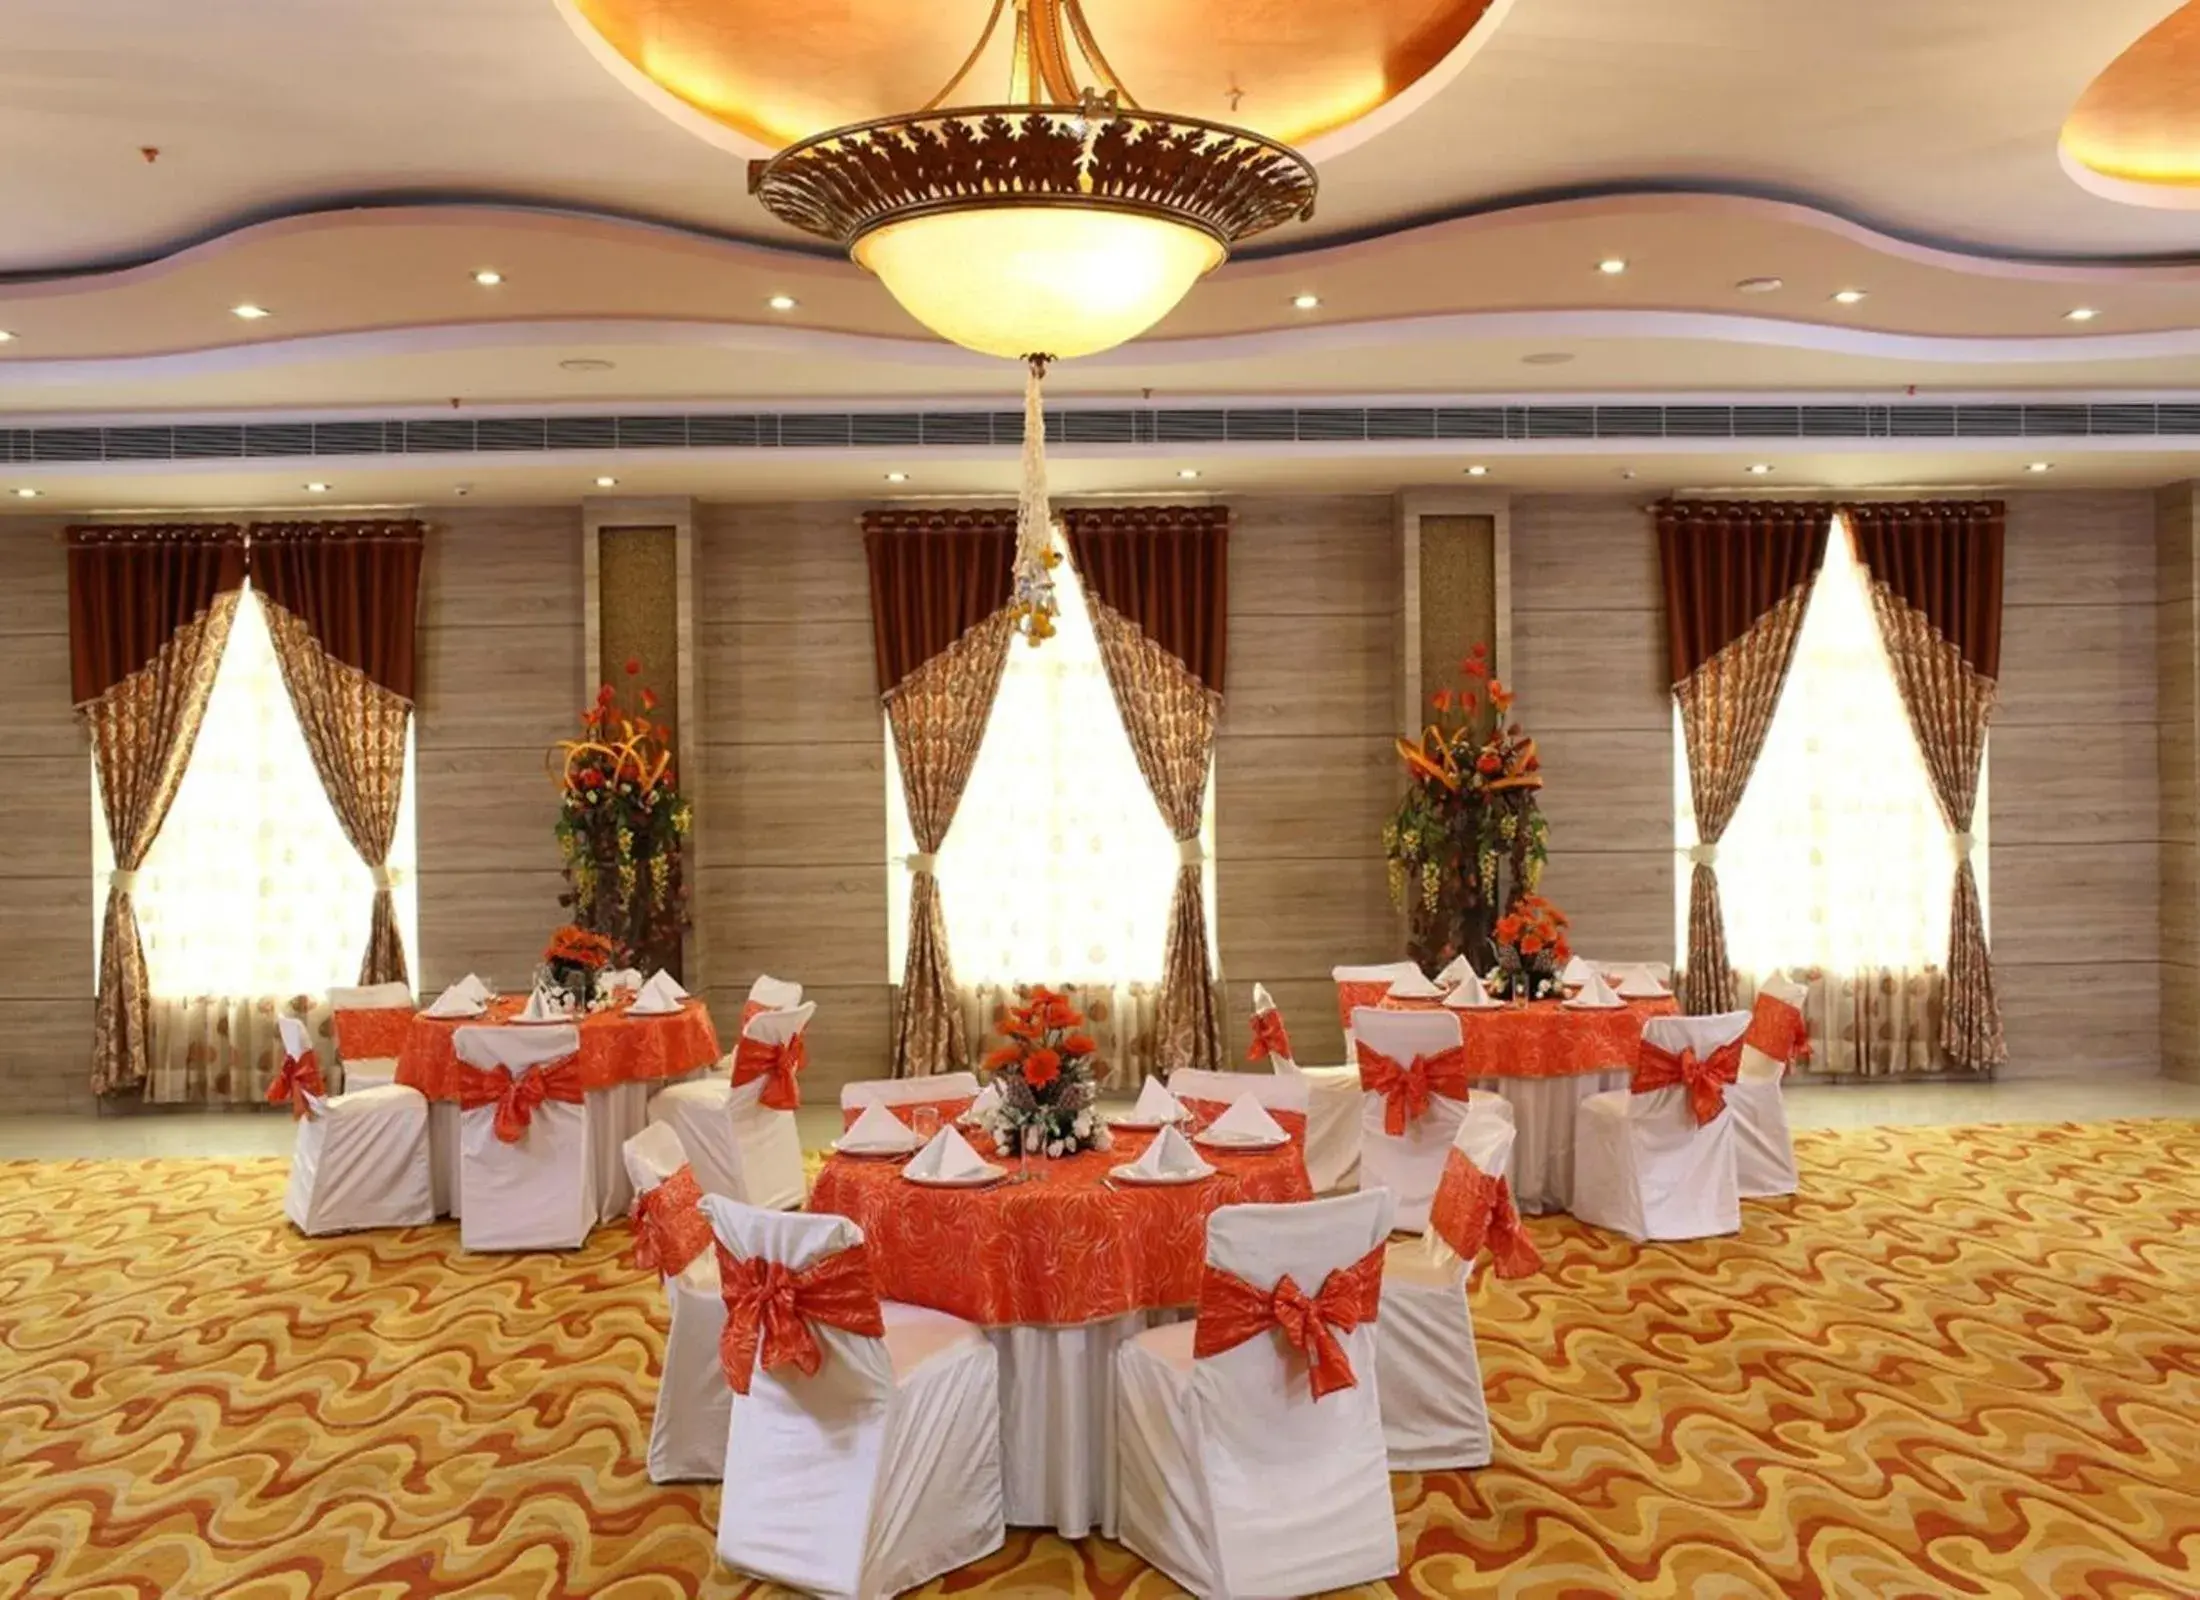 Business facilities, Banquet Facilities in Nidhivan Sarovar Portico